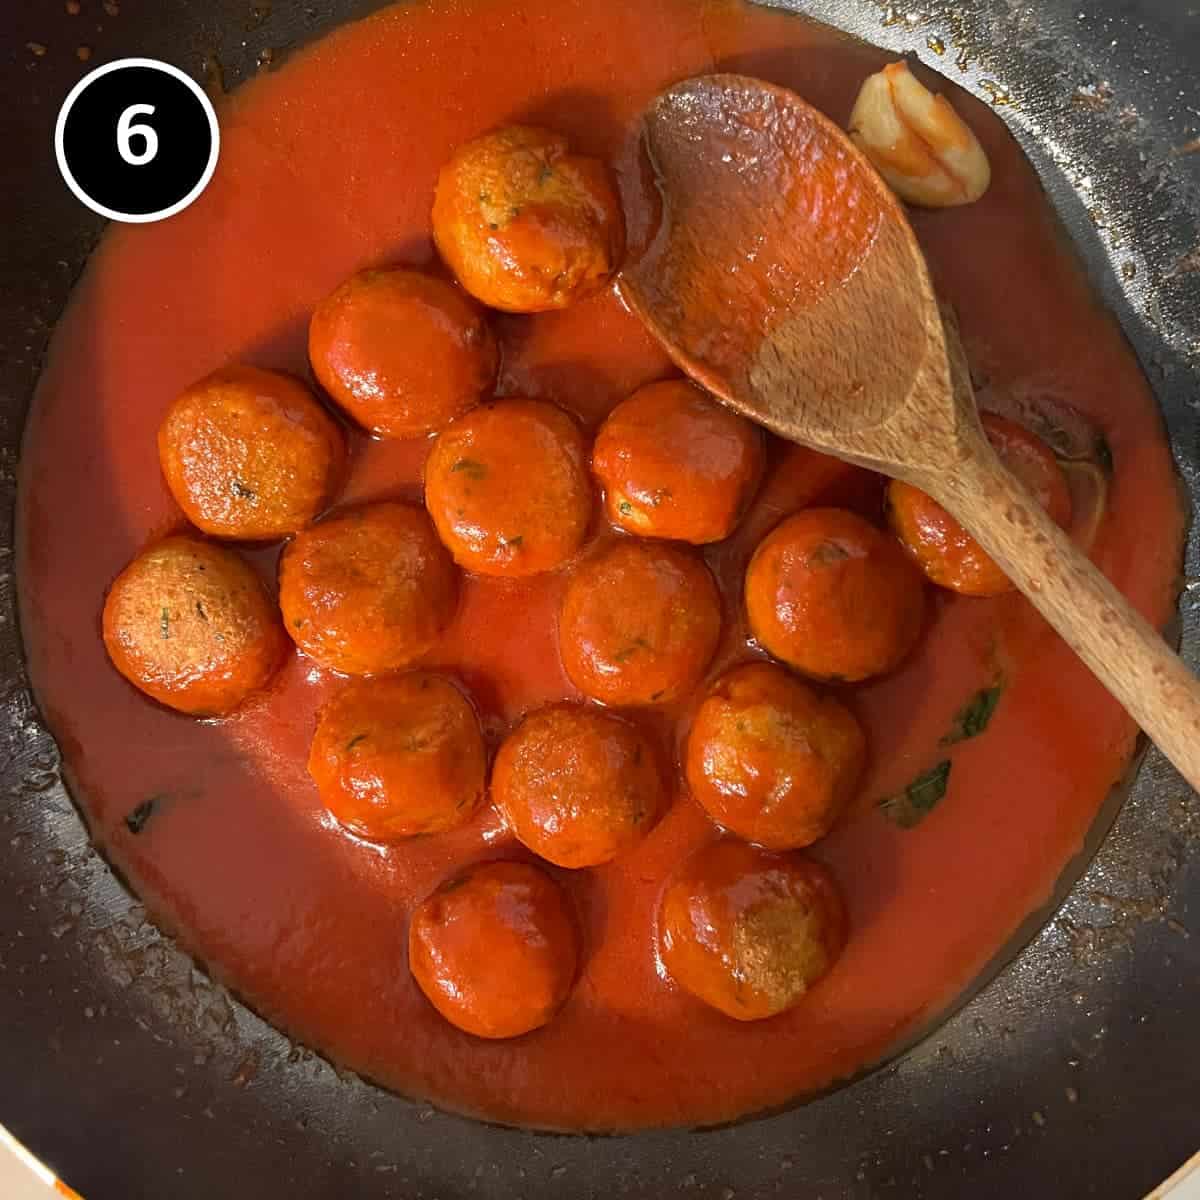 Simmering the bread balls in tomato sauce for Pallotte Cacio e Uova (Cheese & Bread Balls)